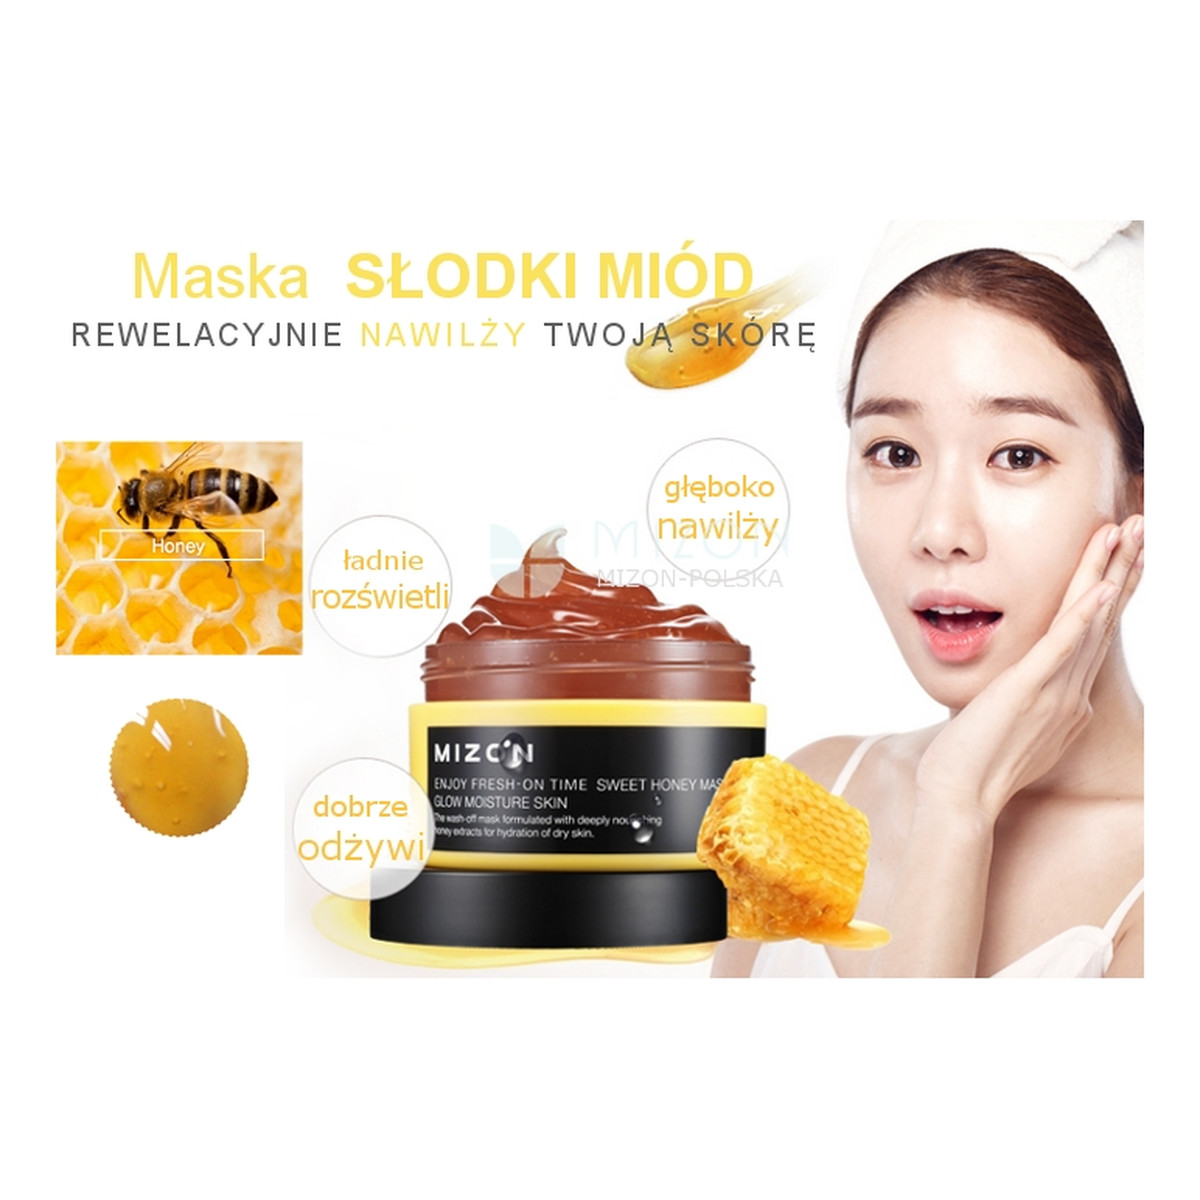 Mizon Enjoy Fresh - On Time Sweet Honey Mask Maska Do Twarzy Słodki Miód 100ml